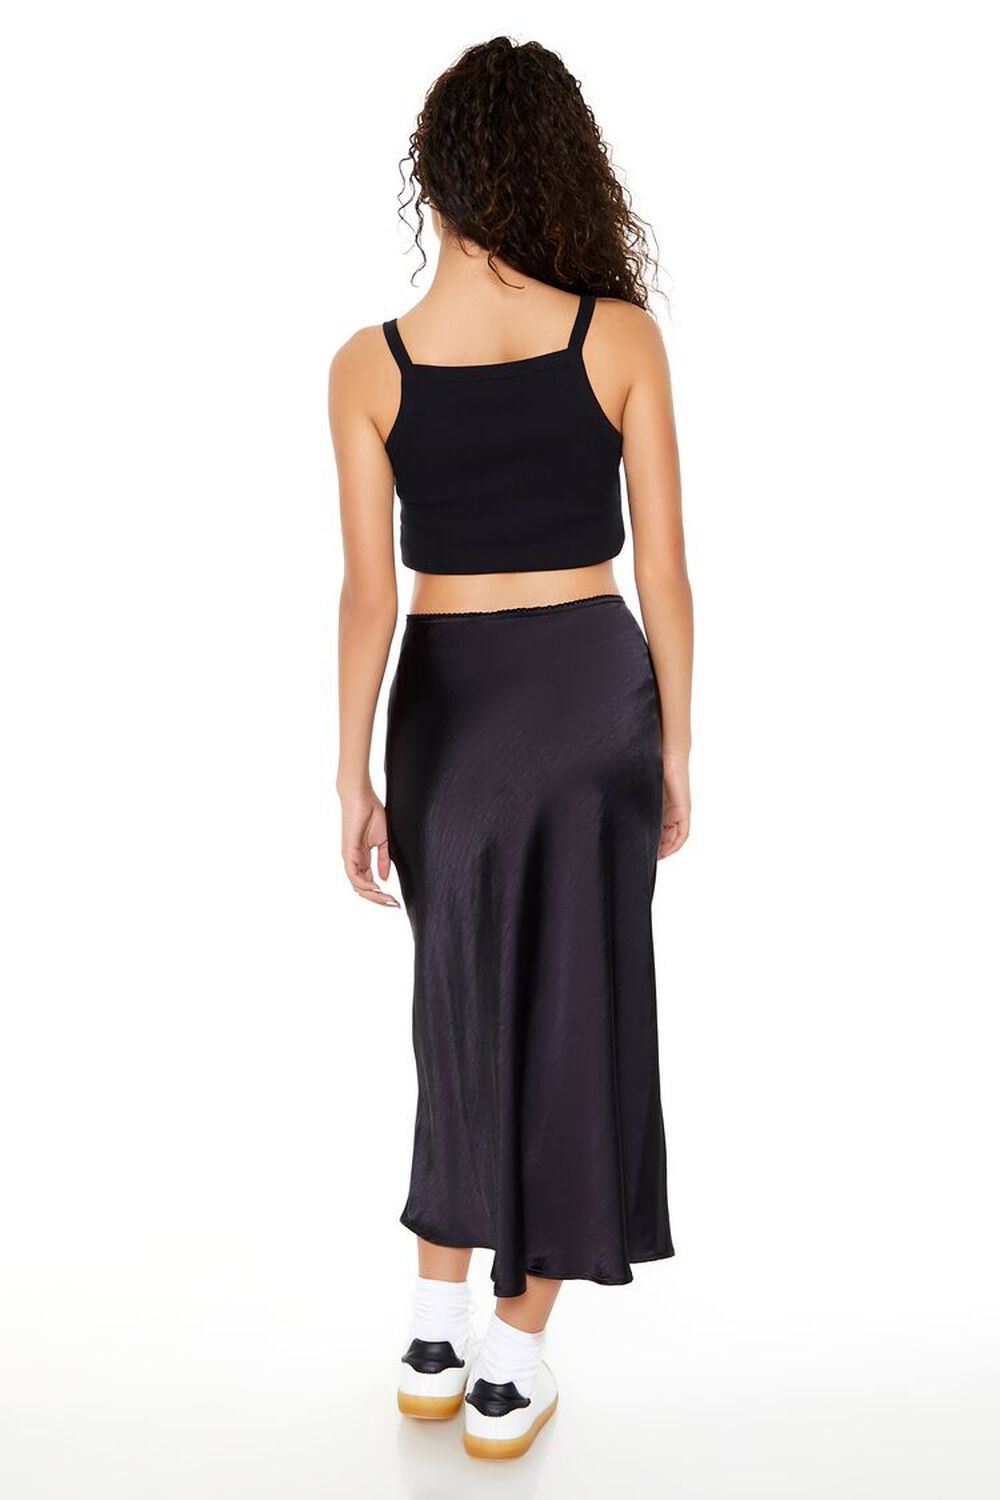 JET BLACK Satin Slip Midi Skirt, image 3